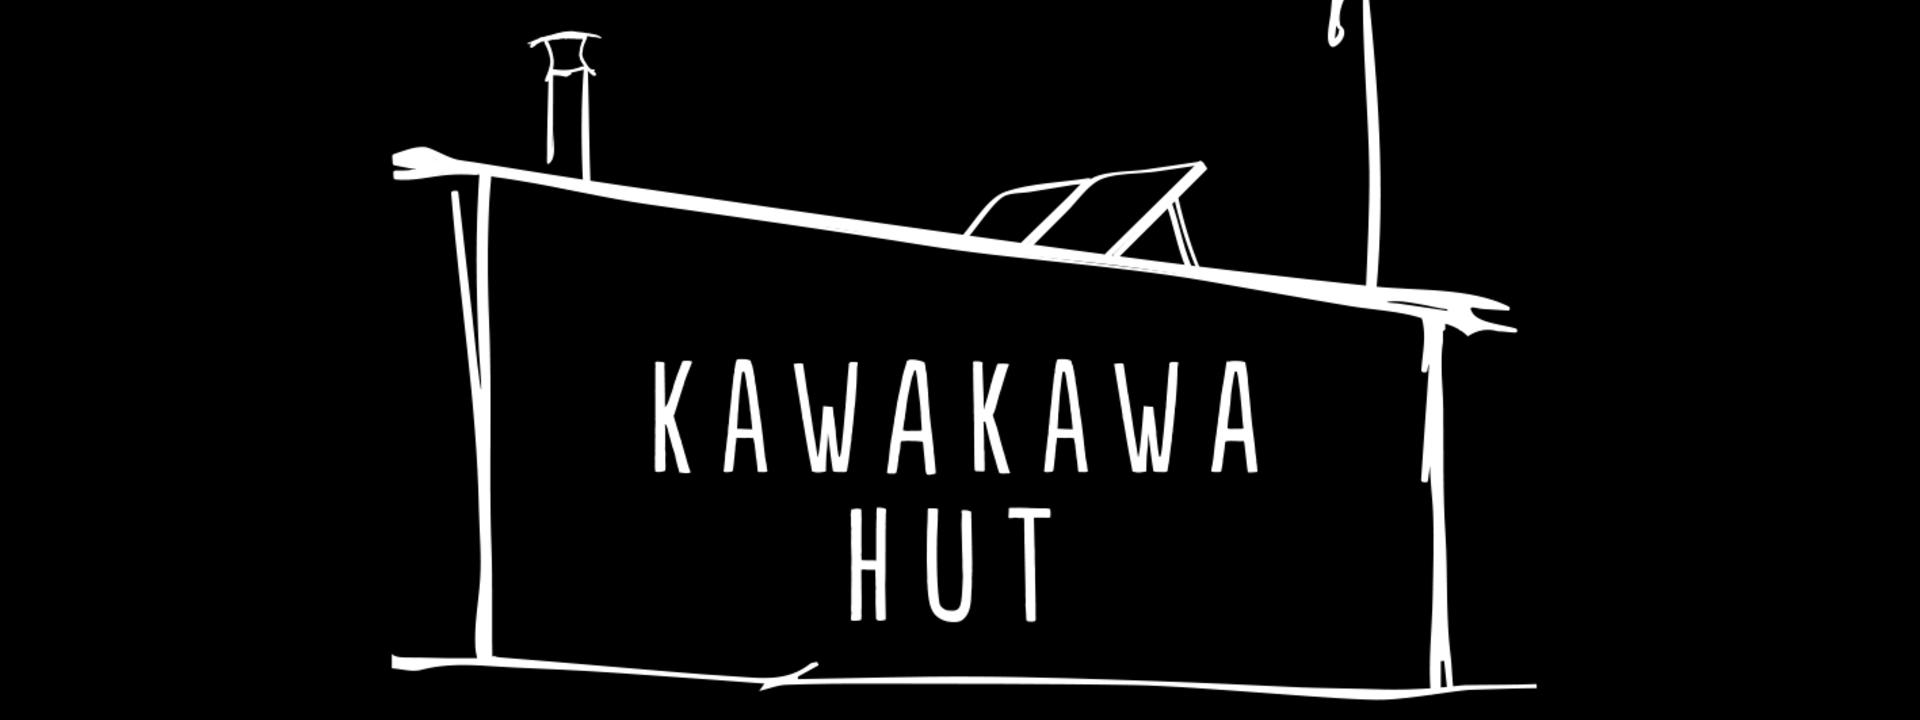 kawakawa-hut_logo-2.jpg